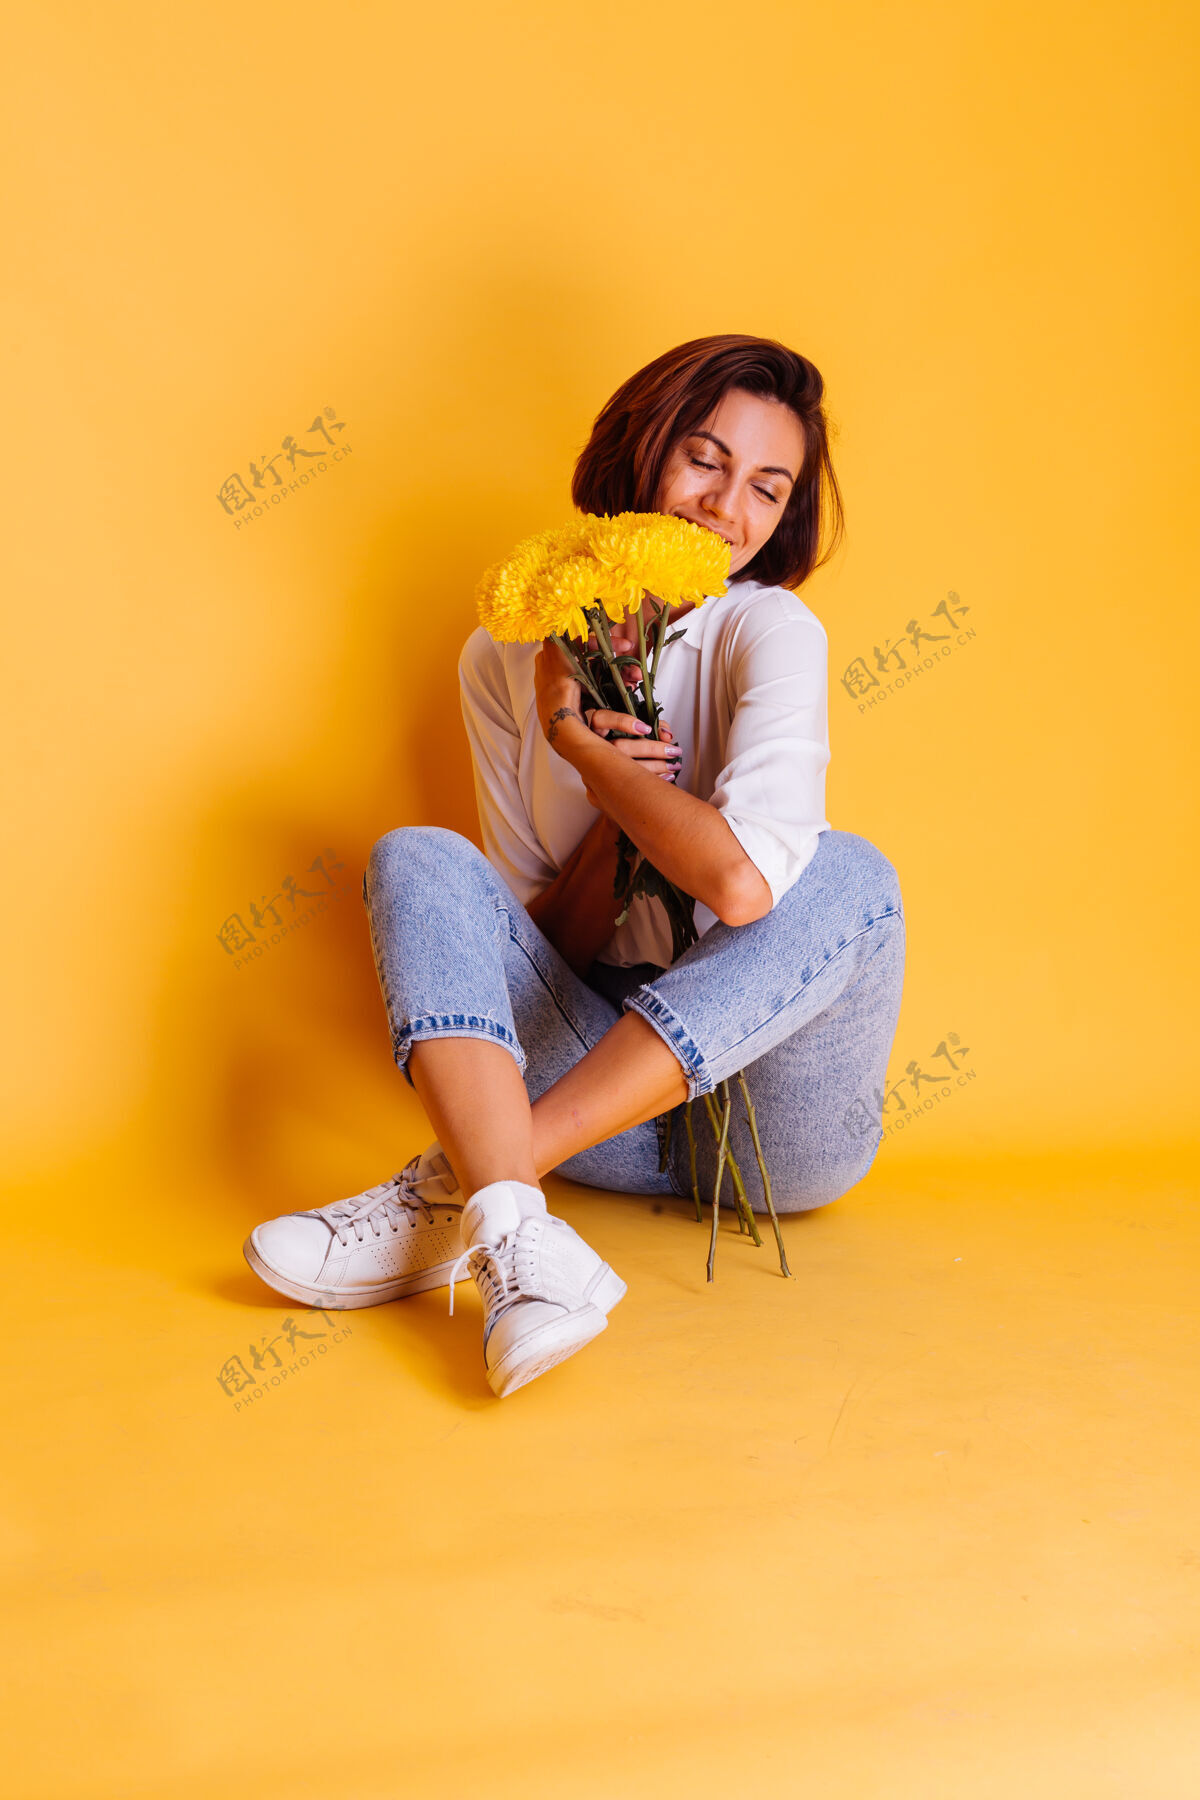 期待摄影棚拍摄的黄色背景快乐的白人妇女短发穿着休闲服白衬衫和牛仔裤手持一束黄色紫苑快乐惊喜微笑